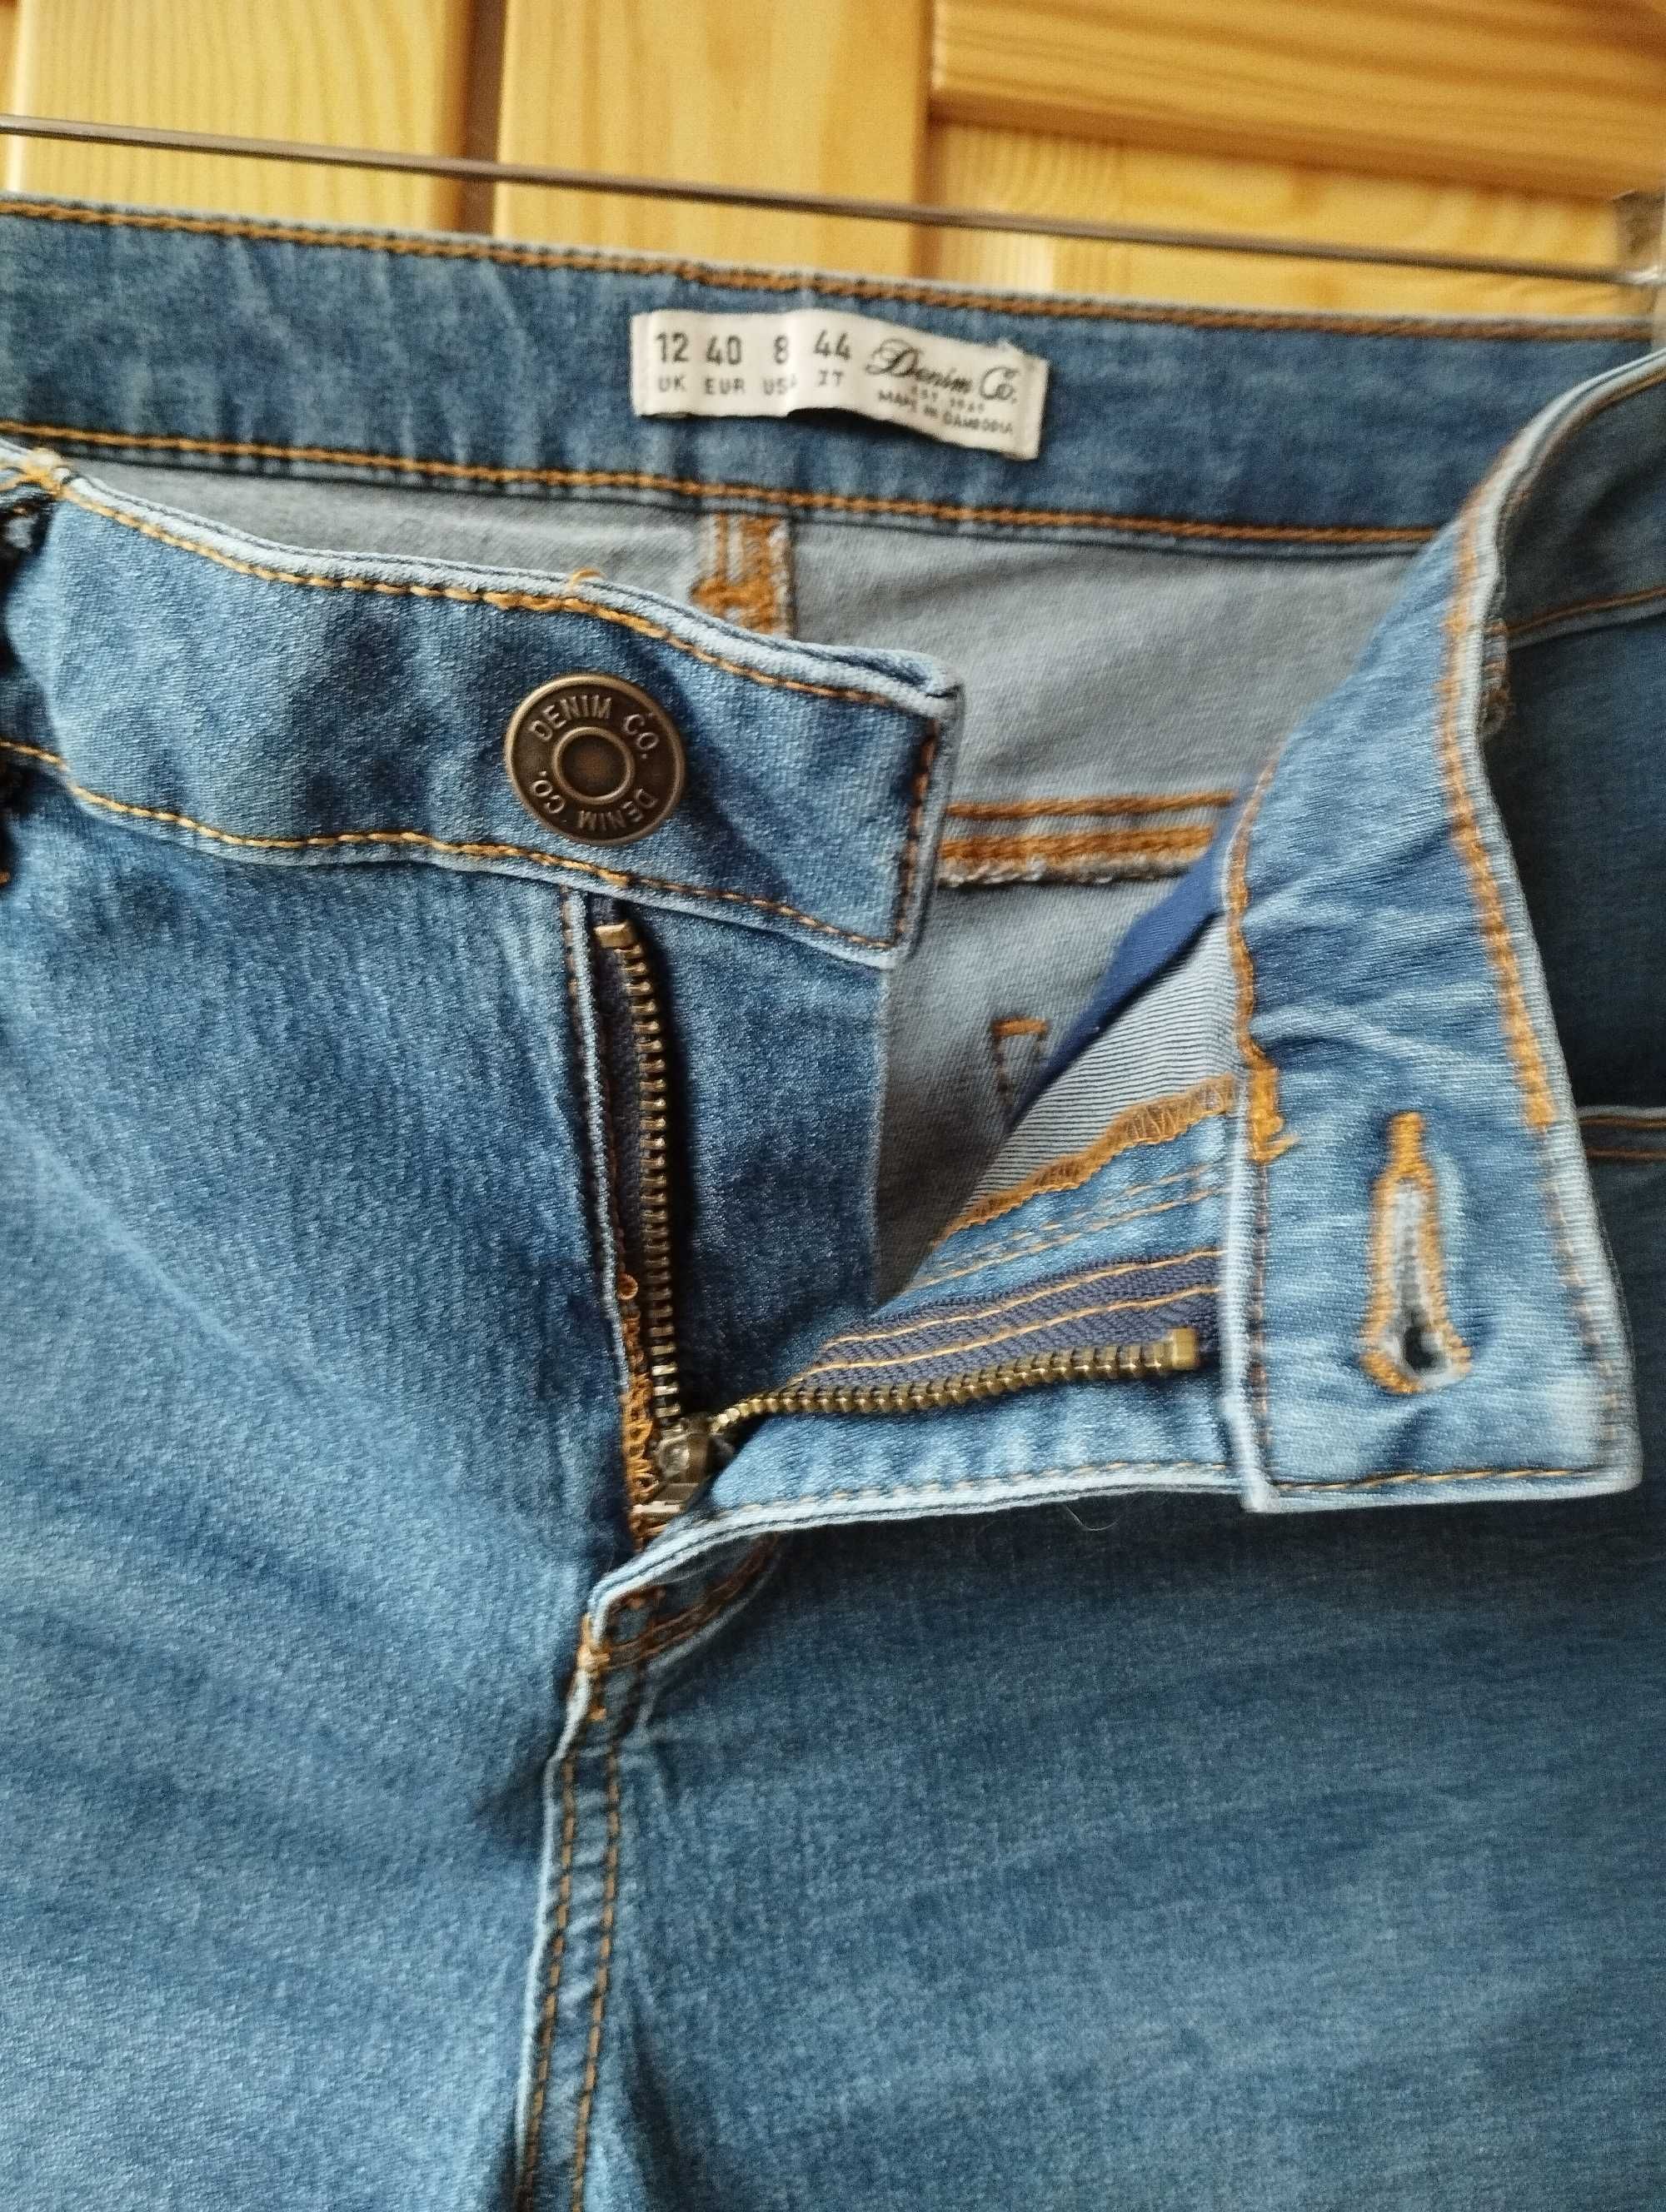 Брендовые шорты джинсовые denim co Камбоджа евро 40